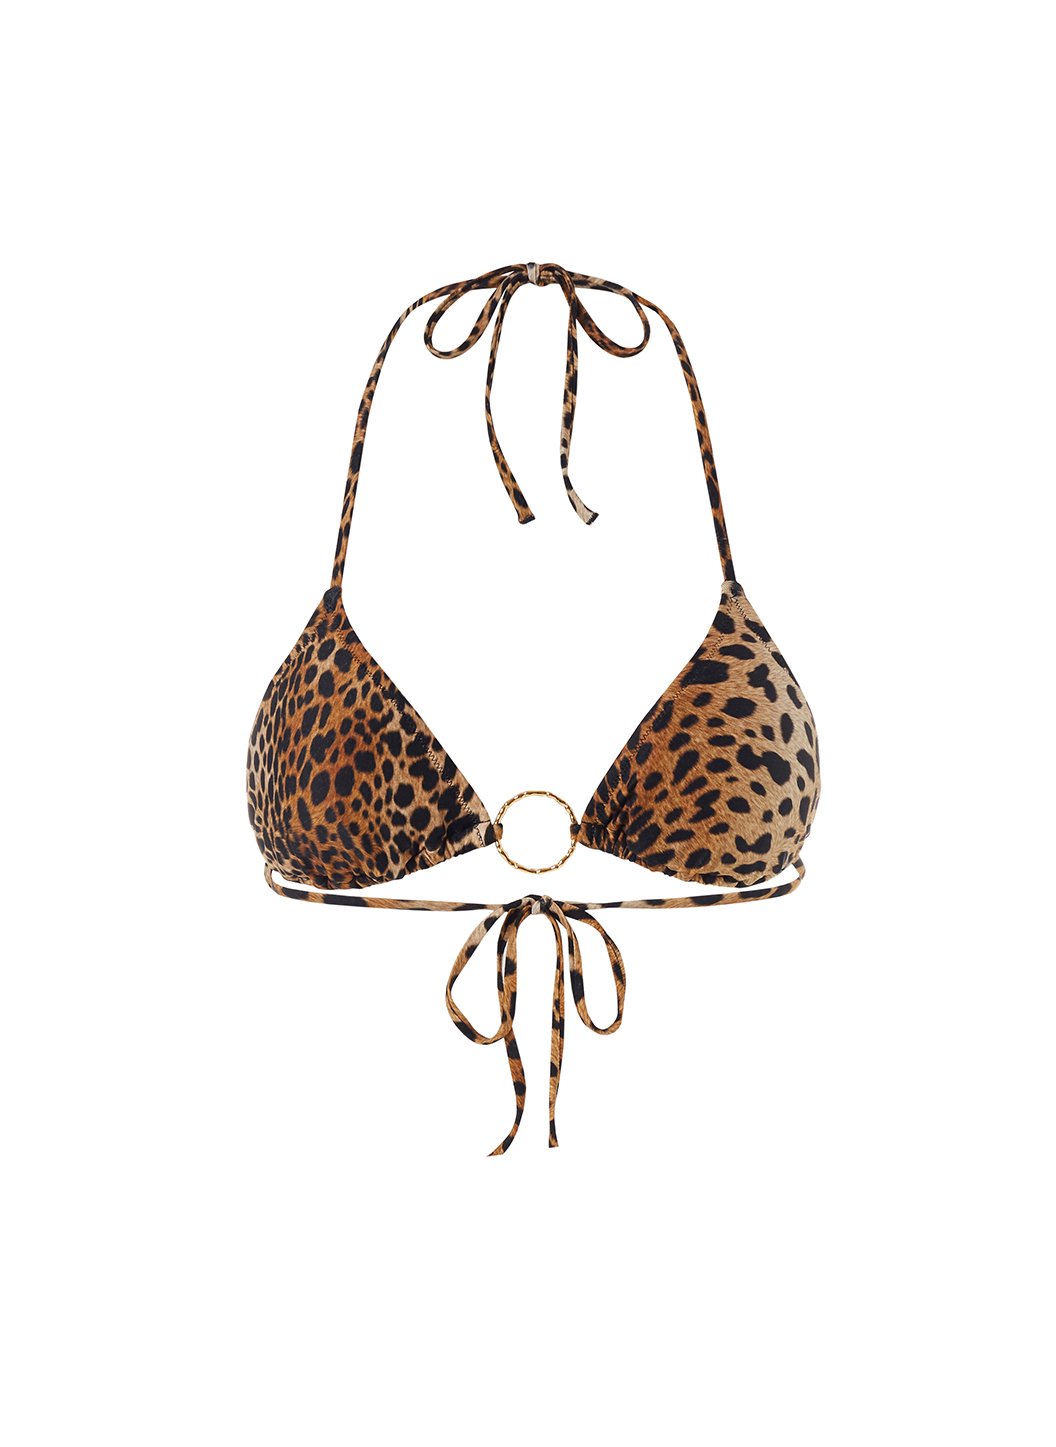 Leopard string bikini top, String Bralette